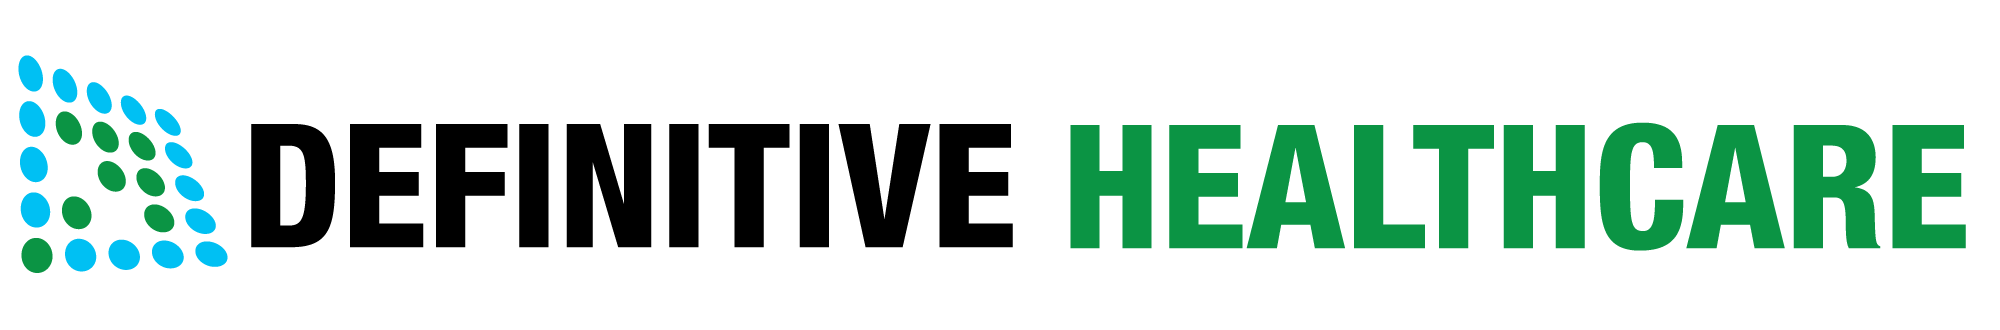 Defintive Healthcare logo